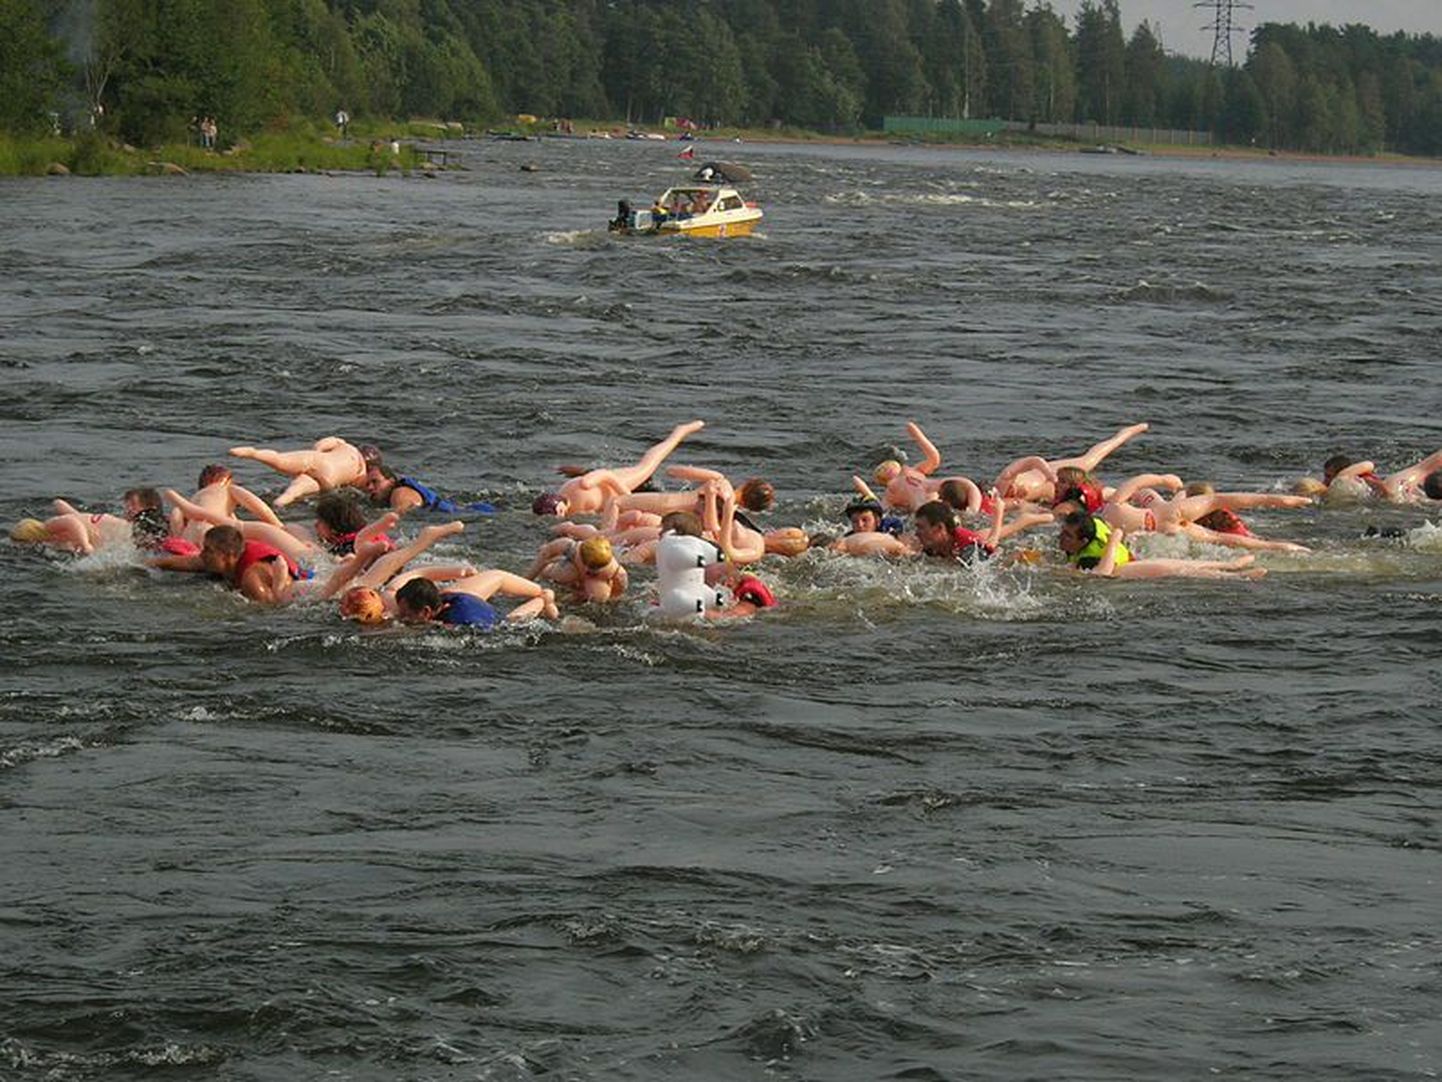 Участники сплава с надувными секс-куклами. Снимок иллюстративный.